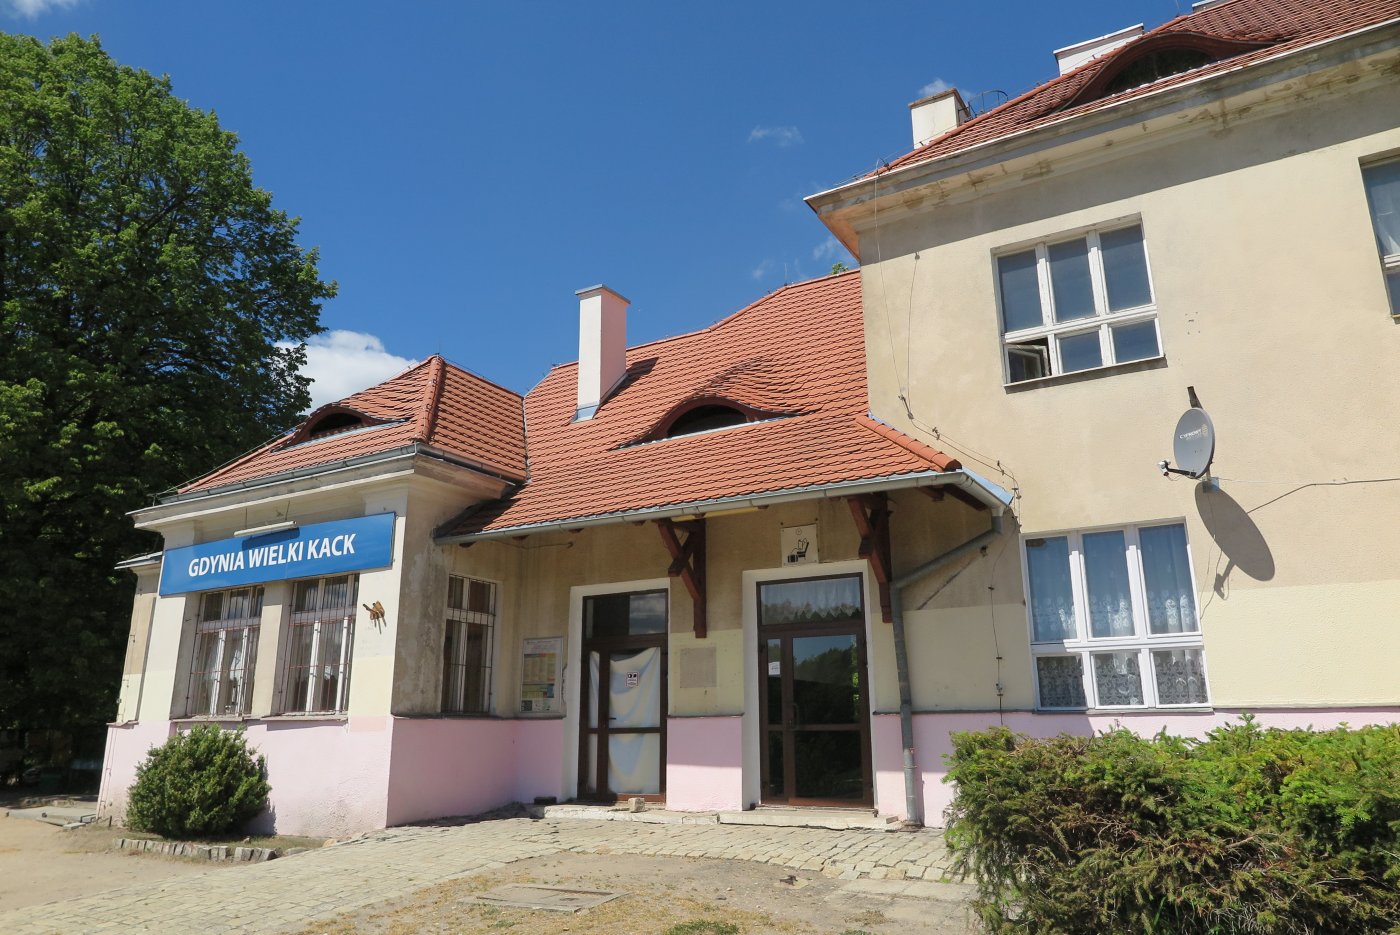 Budynek stacji kolejowej Wielki Kack (1929-1930) został wpisany do rejestru zabytków województwa pomorskiego, fot. C. Łozowska 